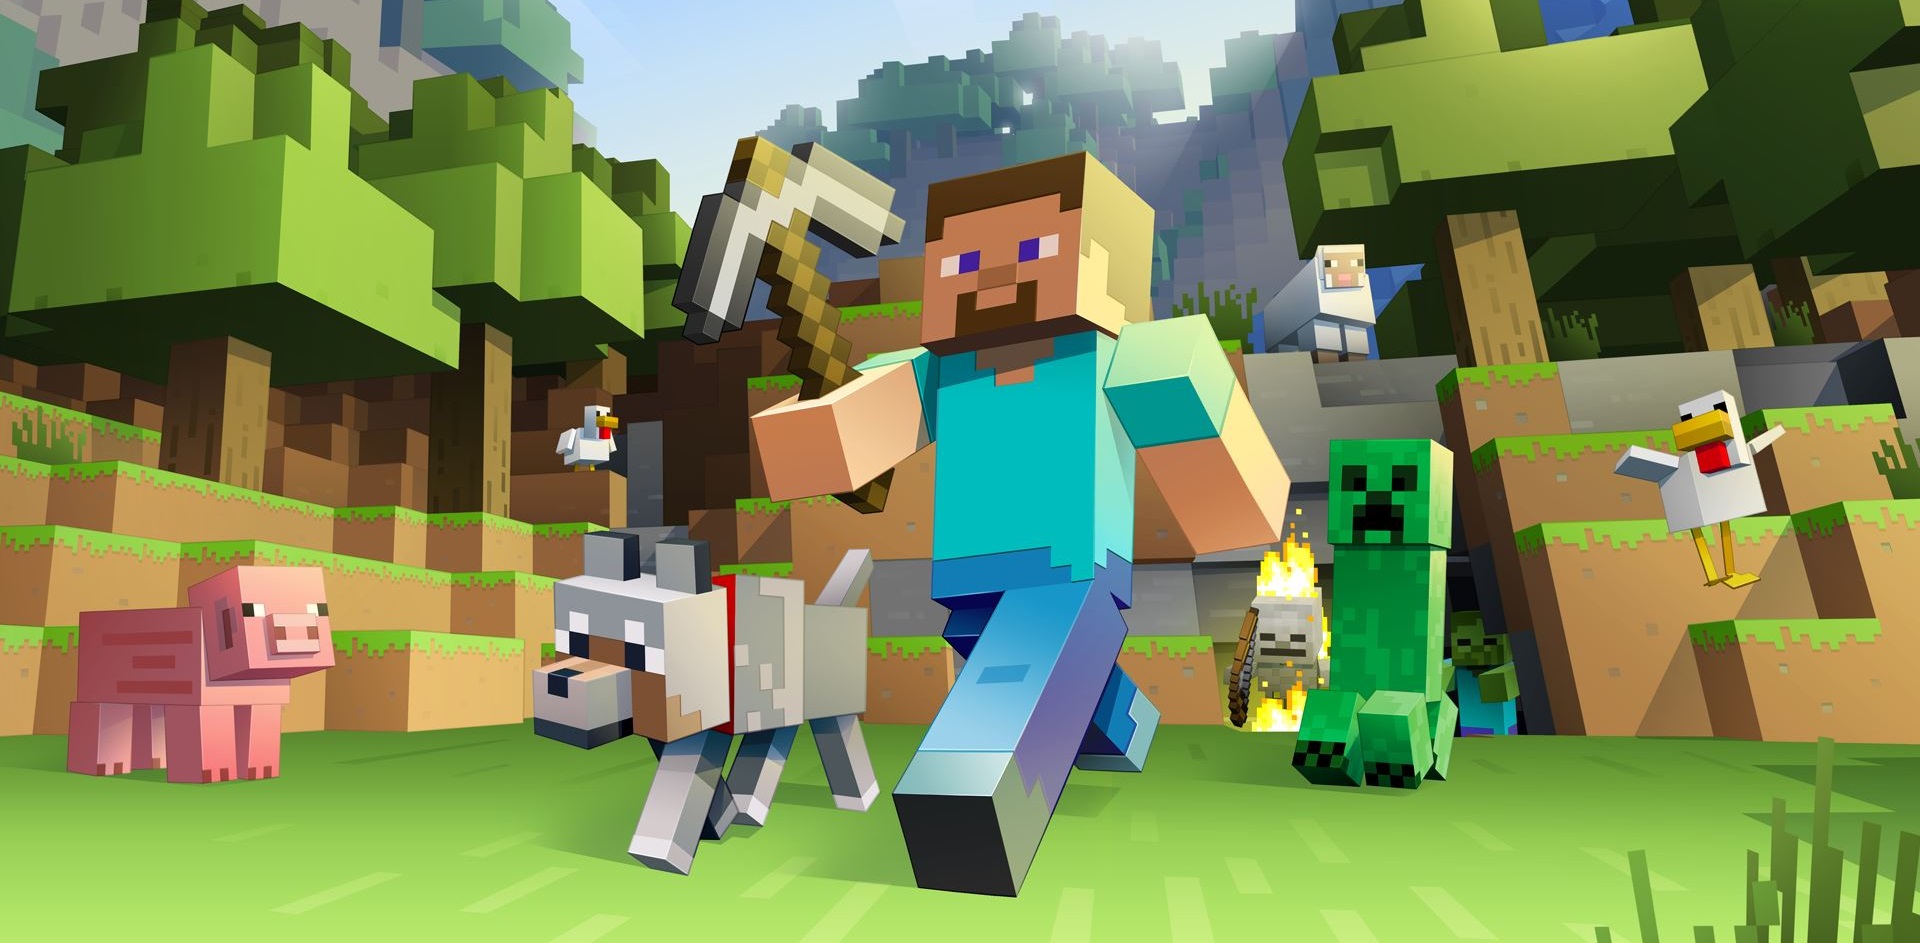 Hračky Minecraft urobia radosť každému objaviteľovi tohto kubického sveta